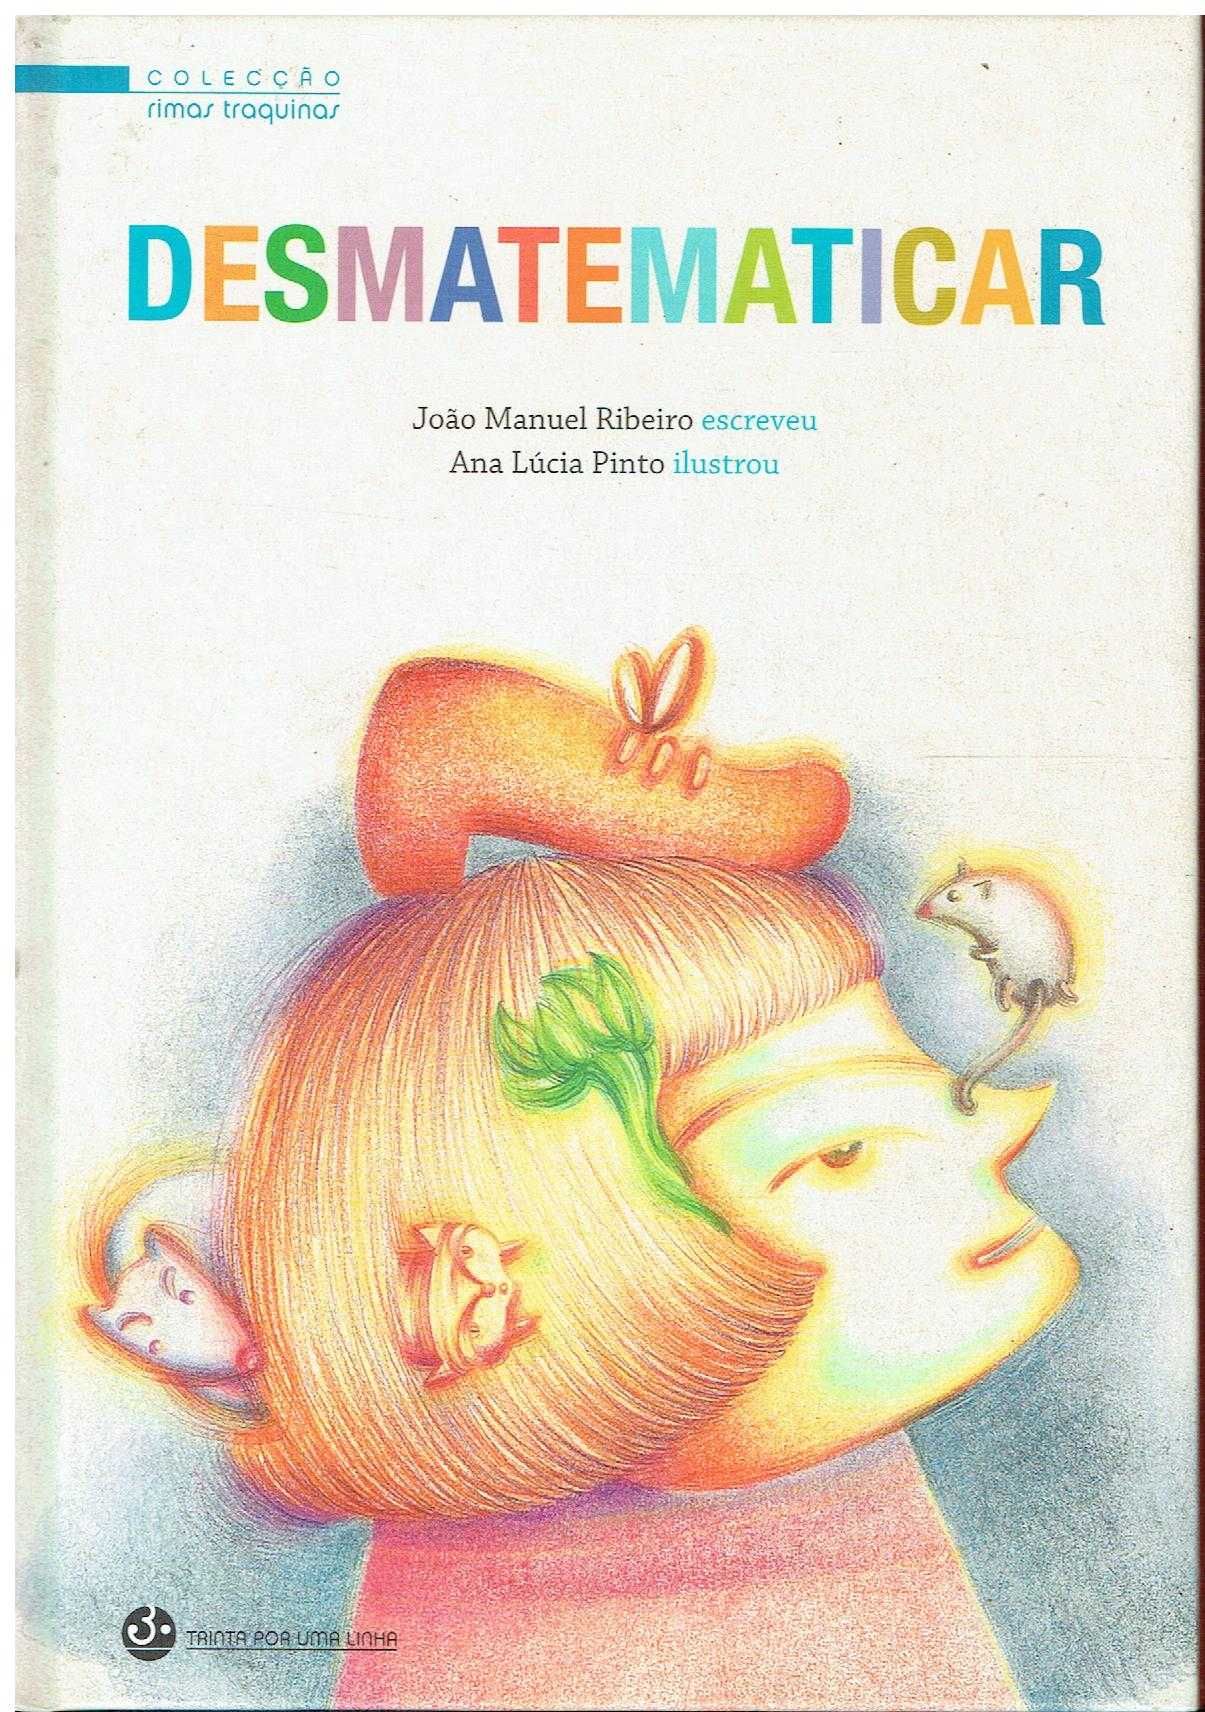 12288

Desmatematicar
de João Manuel Ribeiro;